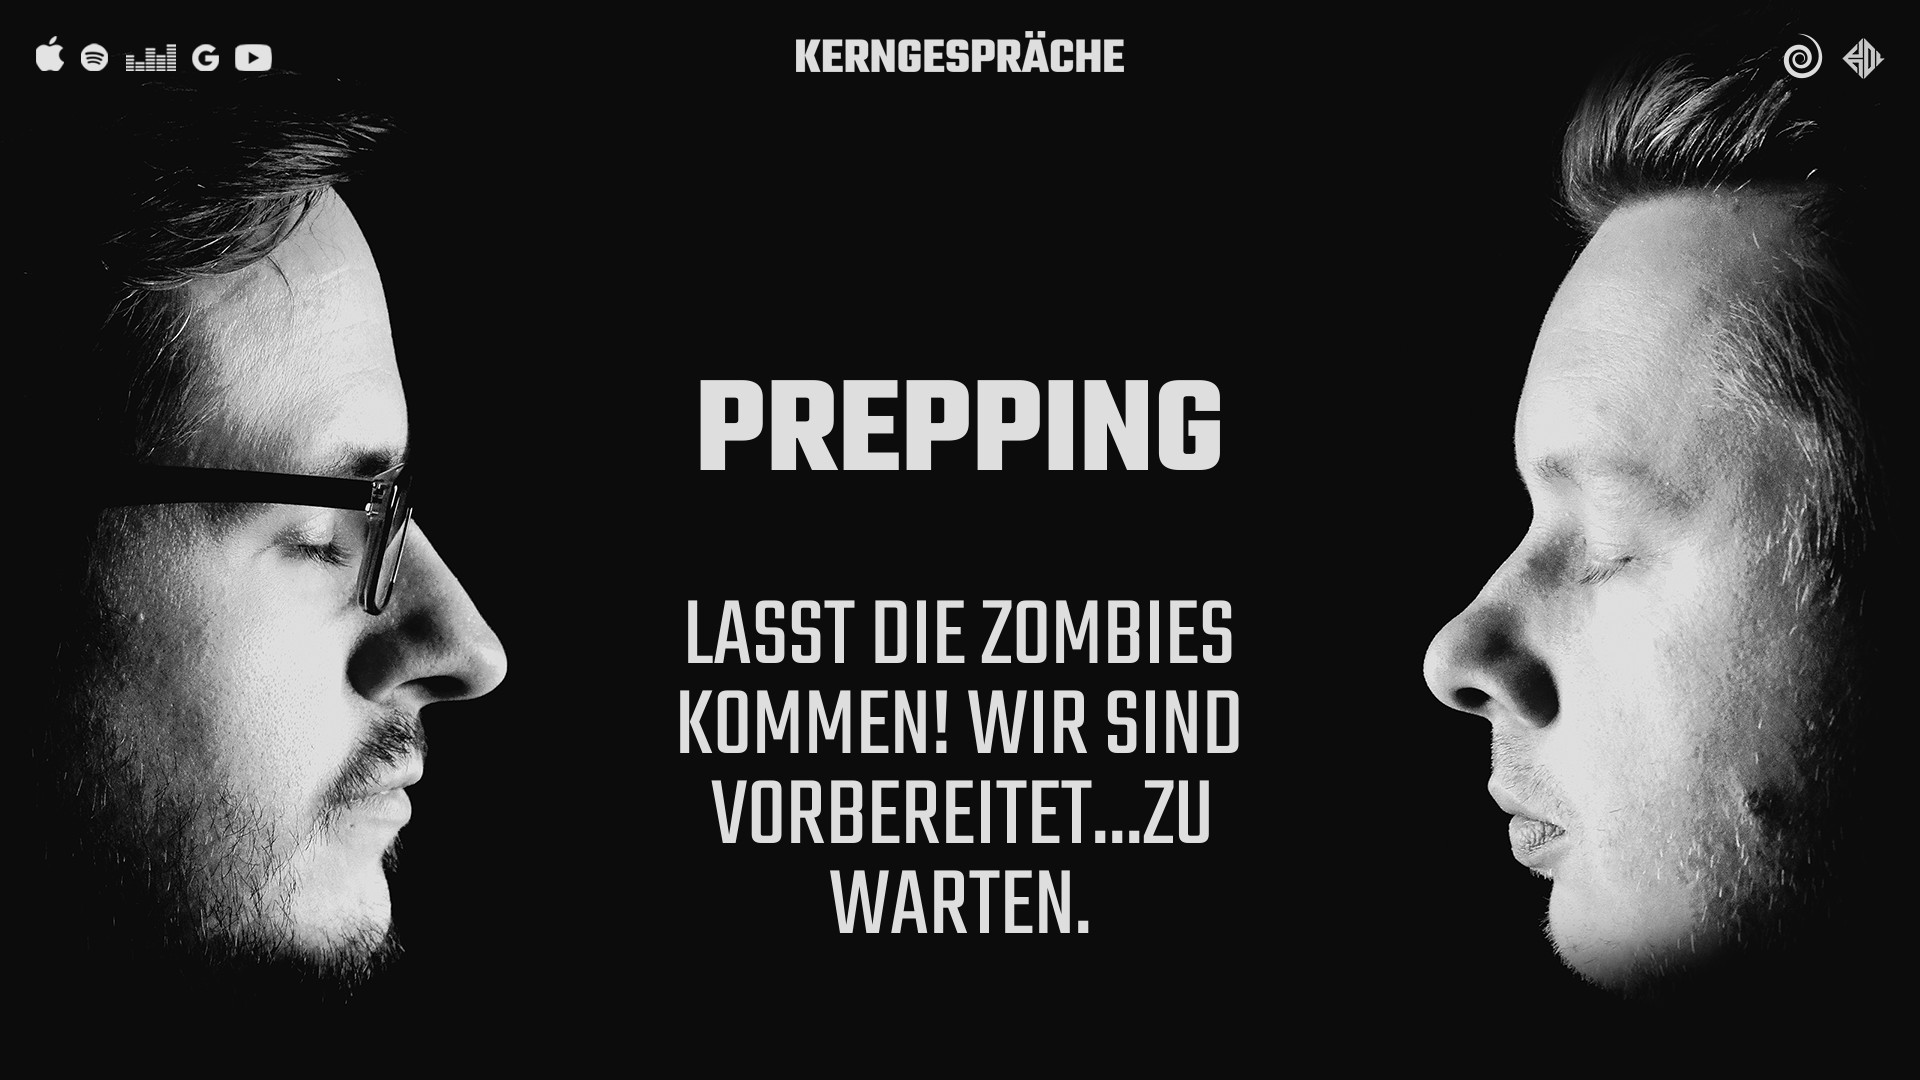 Prepping: Lasst die Zombies kommen! Wir sind vorbereitet...zu warten.